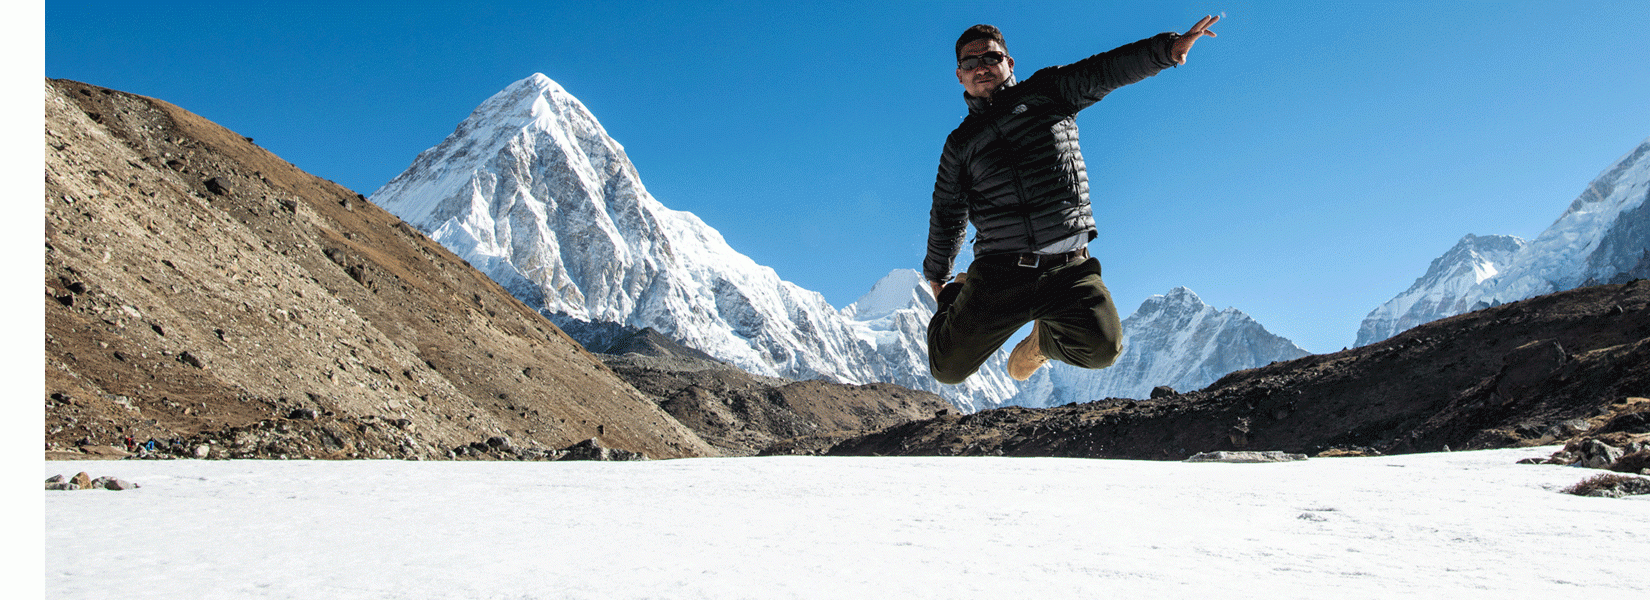 Fun time in Himalayas 